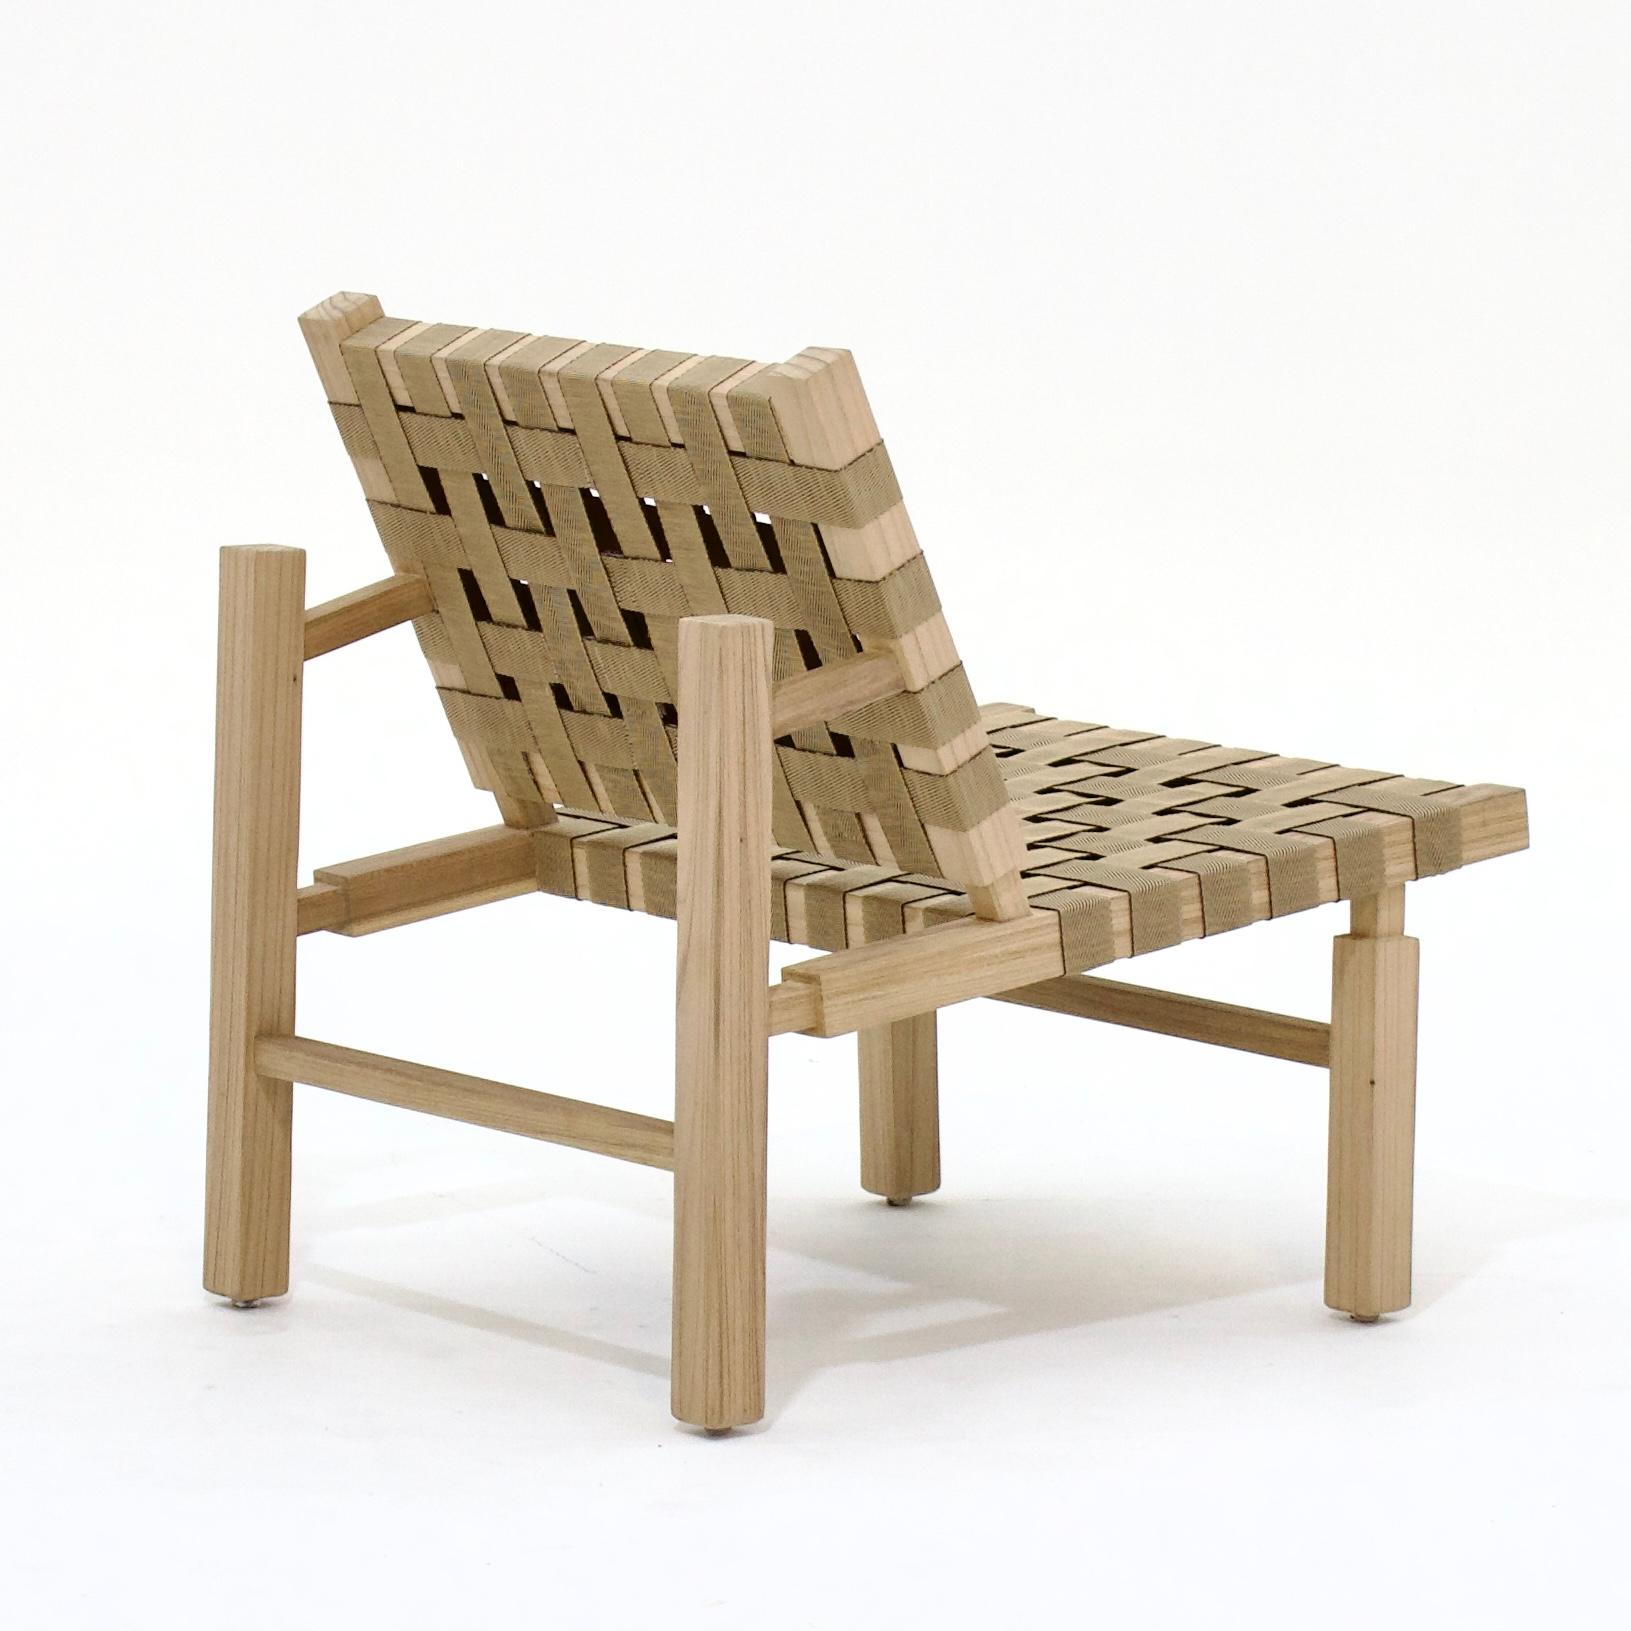 Fauteuil Valentina de Samuel Lamas, 2022
Ce fauteuil minimaliste extérieur/ intérieur en bois massif et sangles est conçu dans un raisonnement architectural et géométrique.  Avec l'ADN carré, tous les éléments constituent son fonctionnement et sont